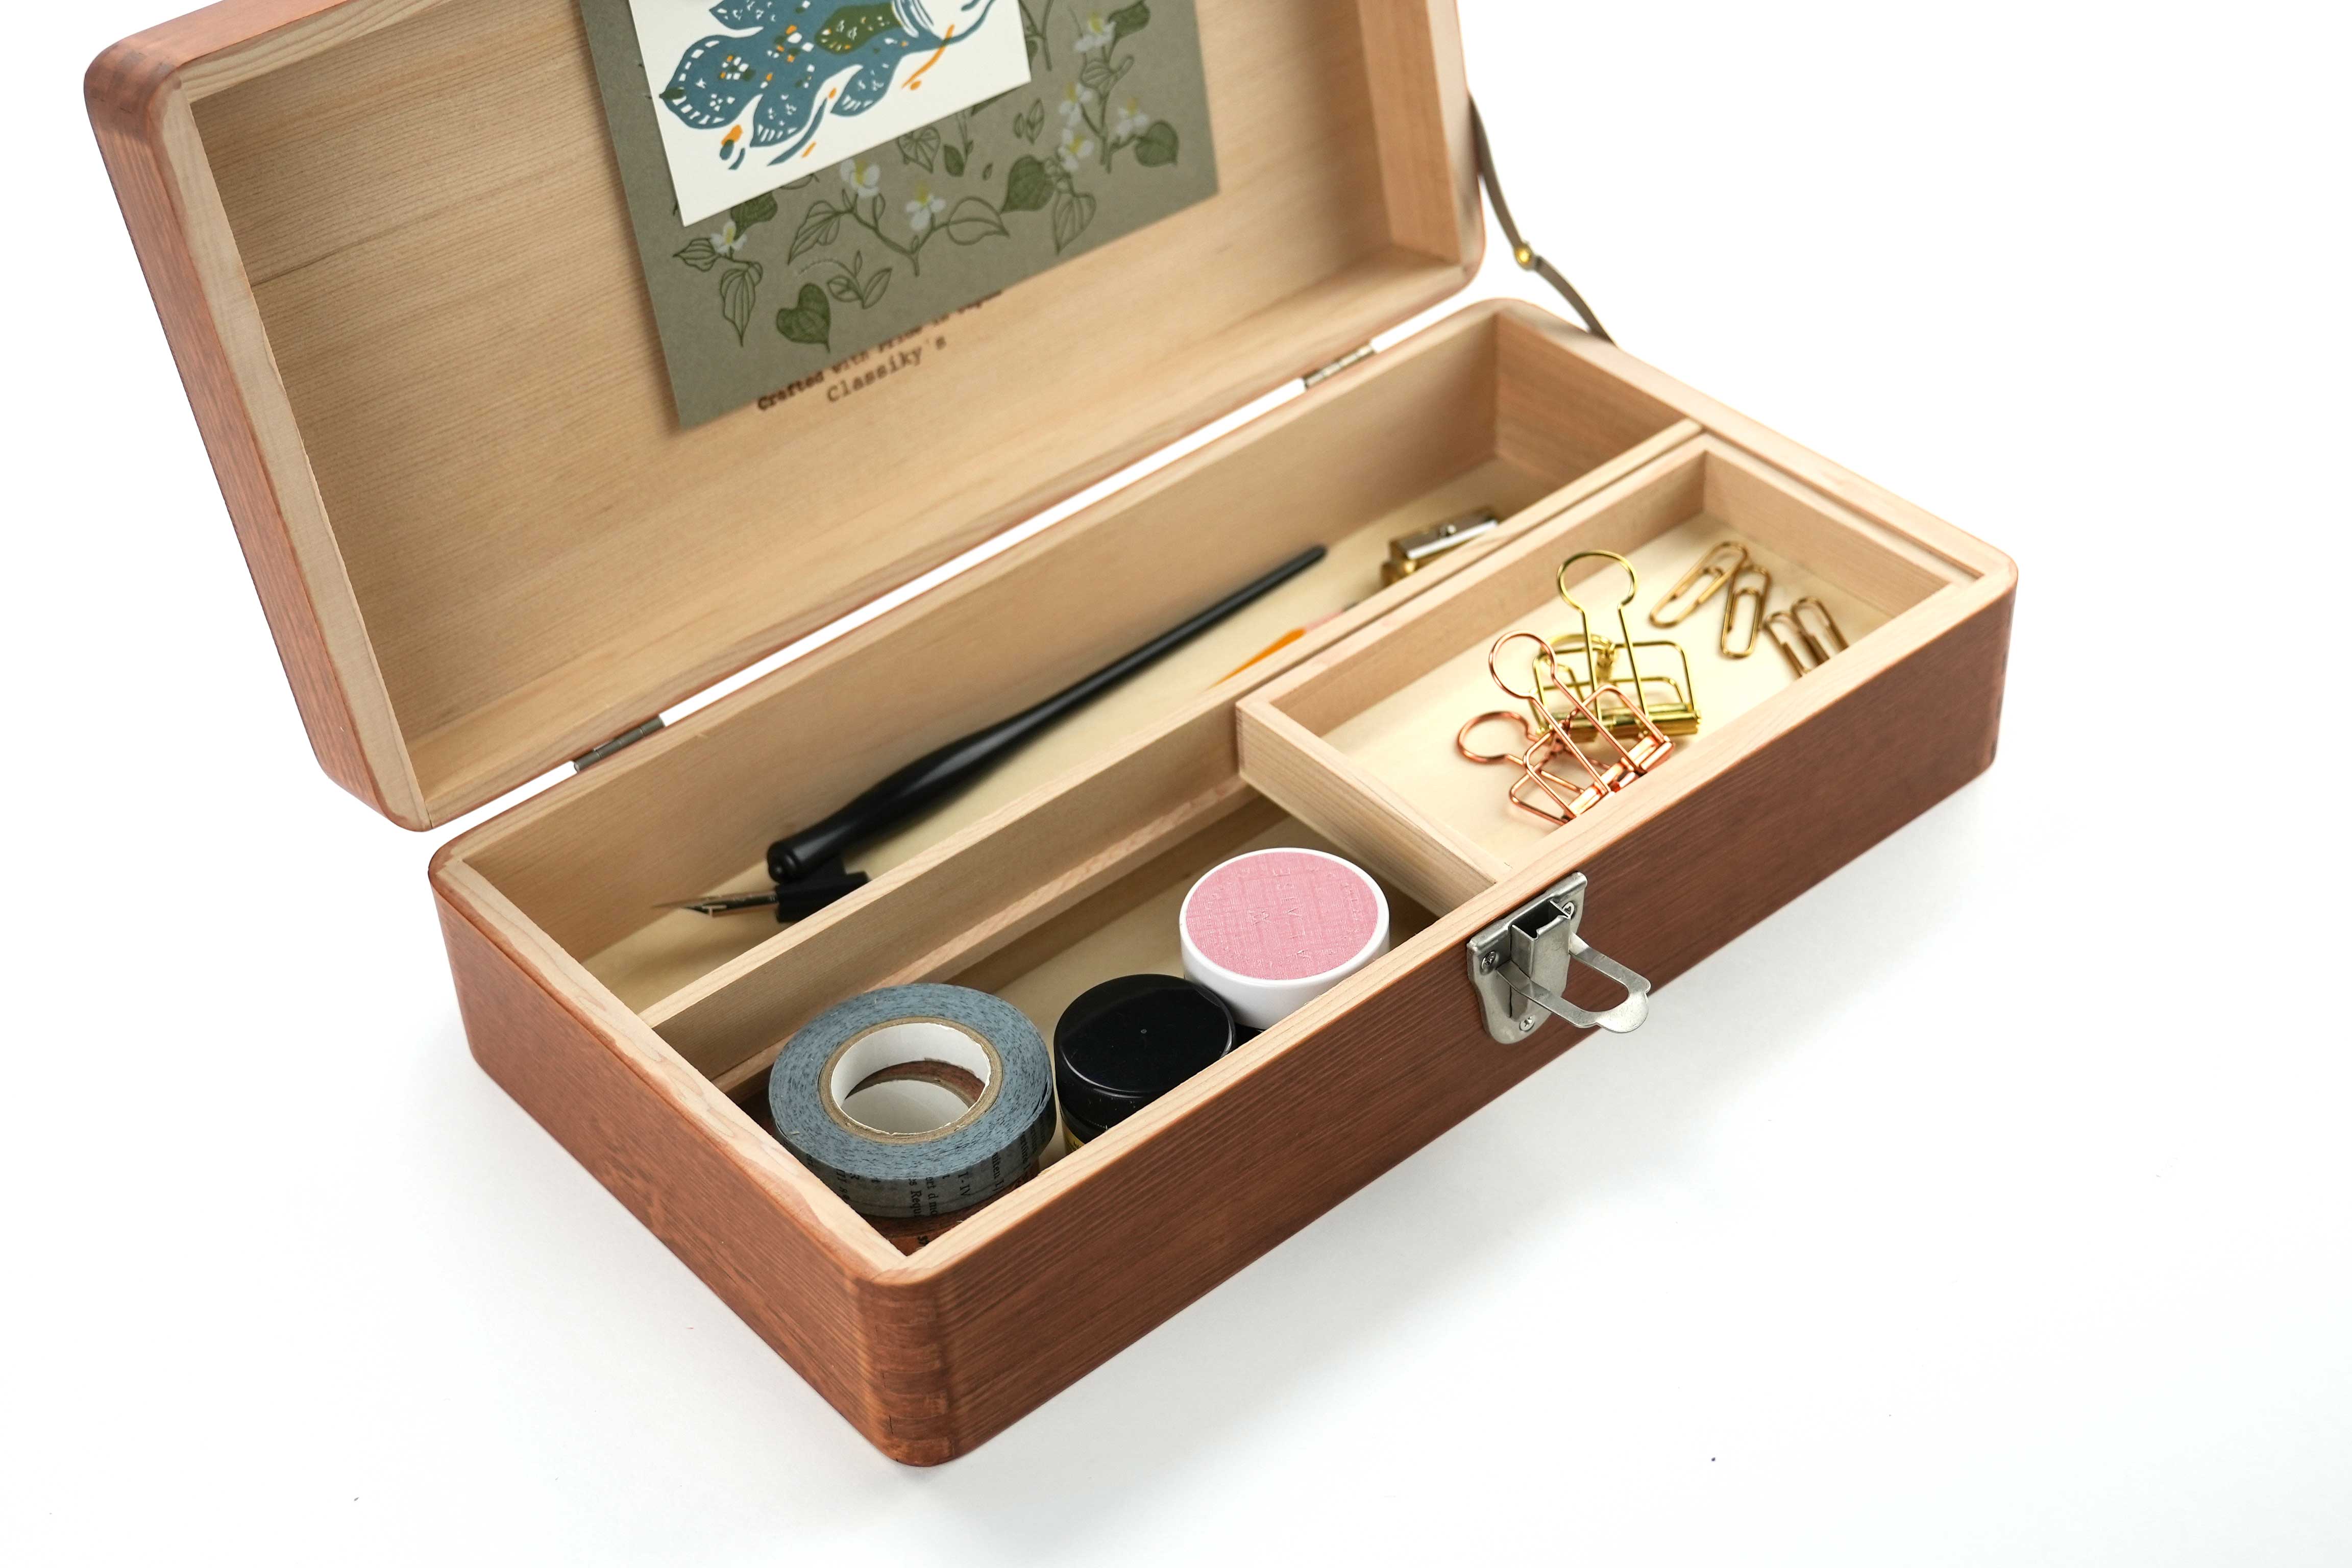 Toga Wood Desk Tool Box